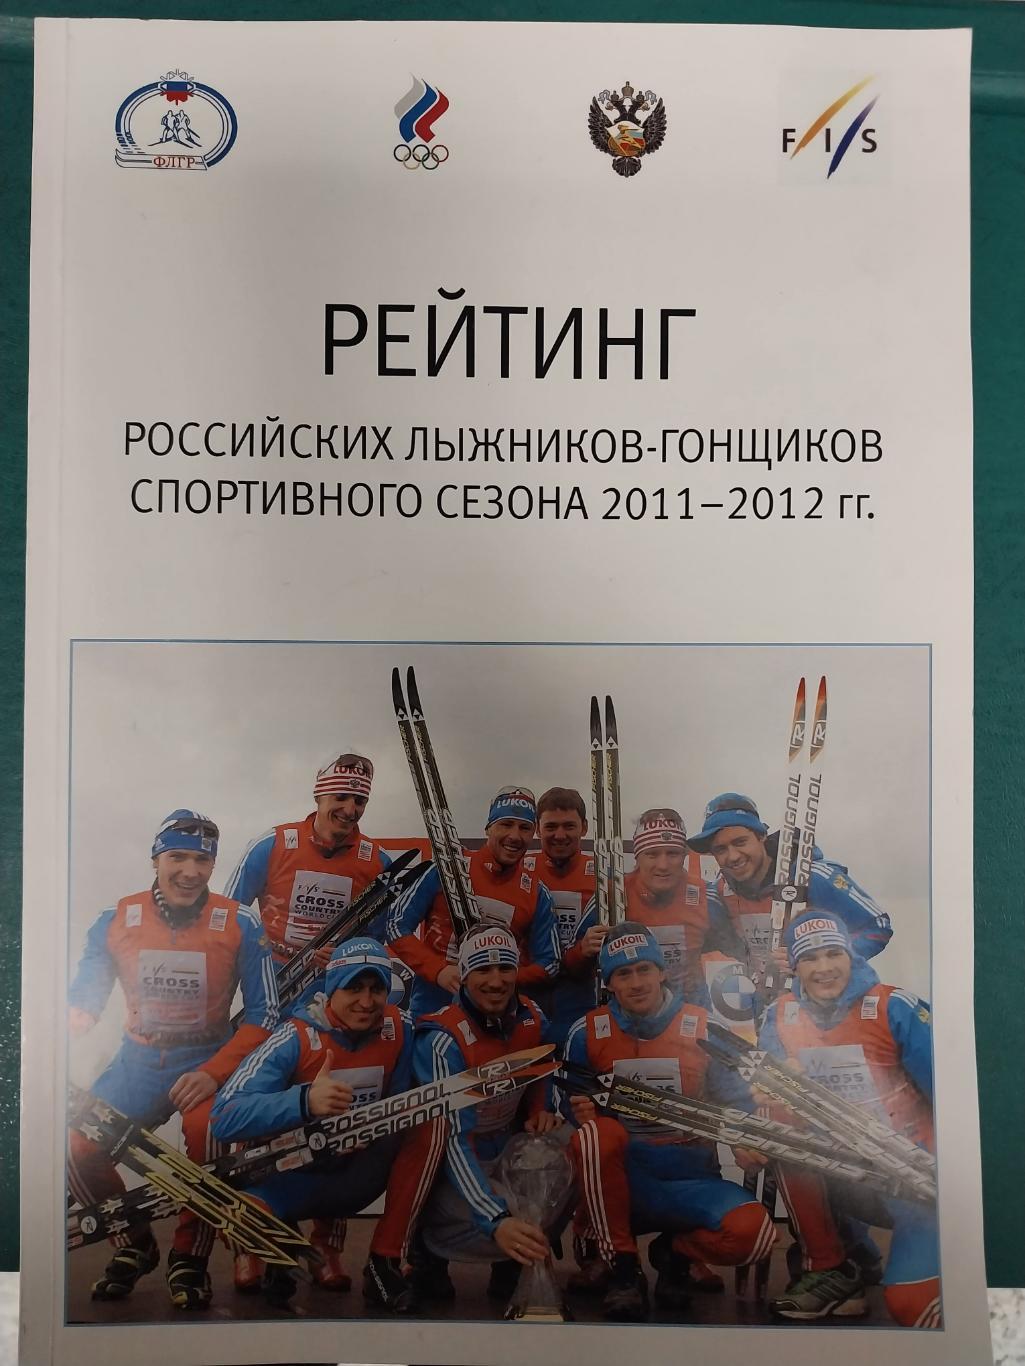 Рейтинг российских лыжников-гонщиков спортивного сезона 20011-2012 гг